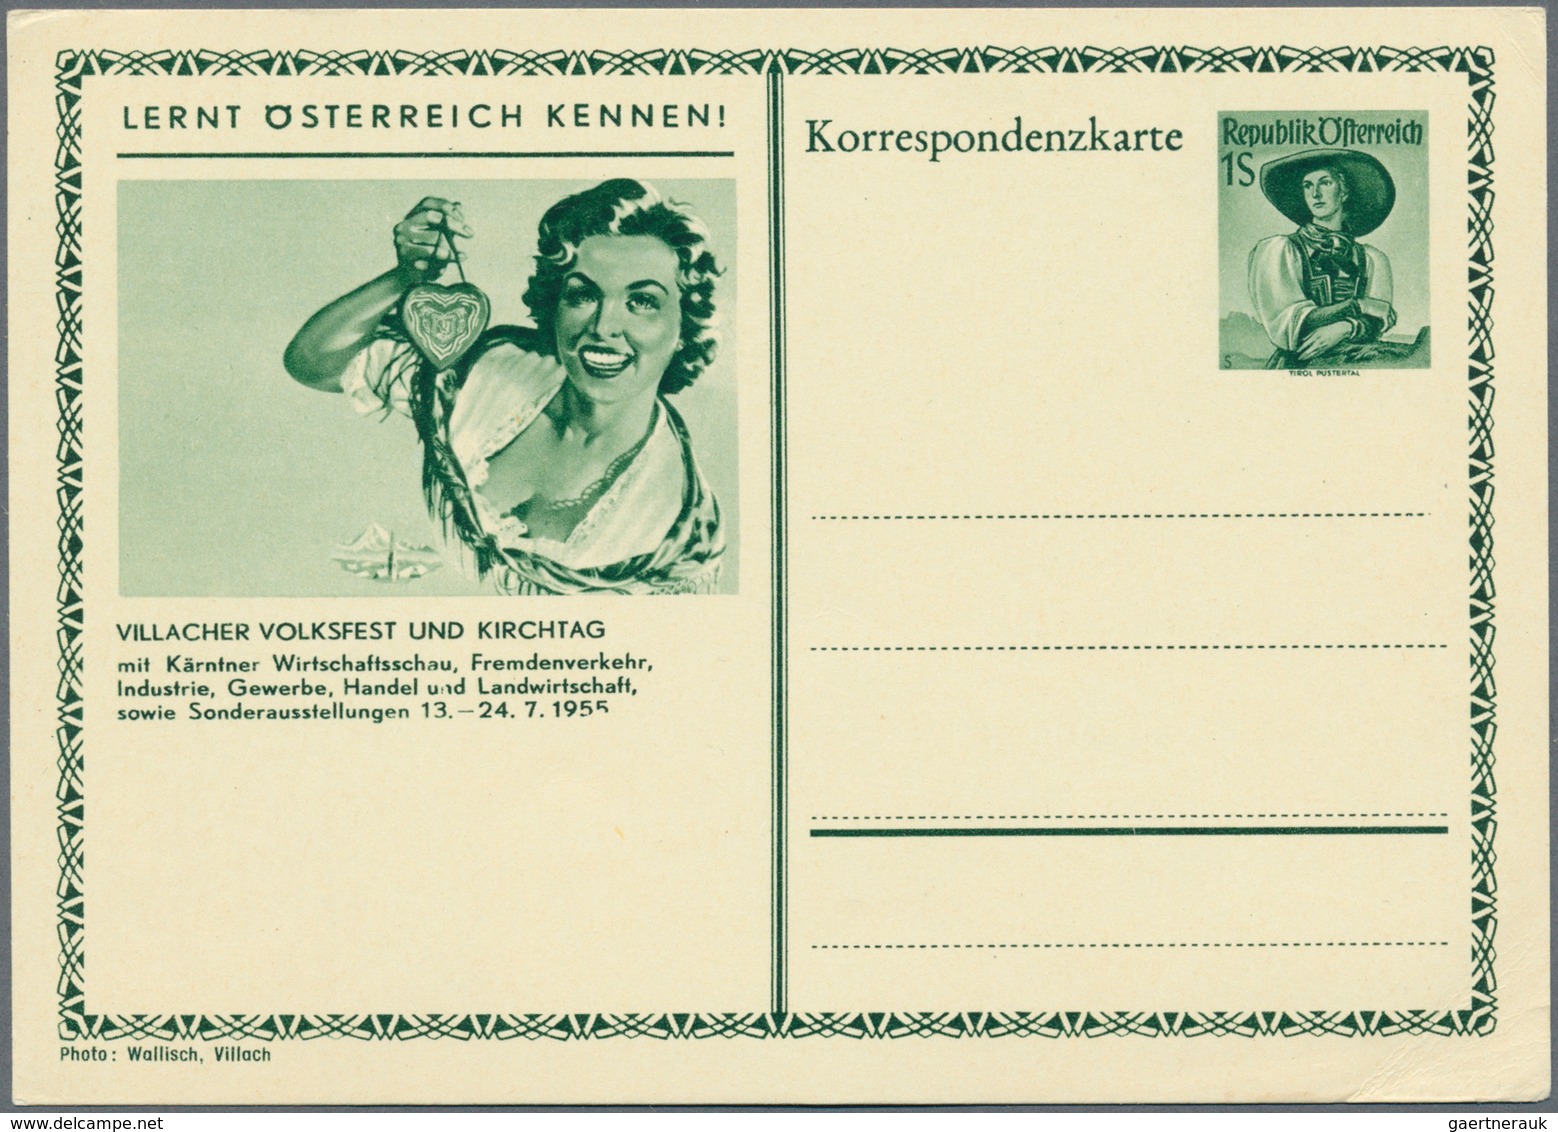 Österreich - Ganzsachen: 1951/1998, Slg. mit ca.150 Bildpostkarten in 2 Briefealben, dabei bessere K